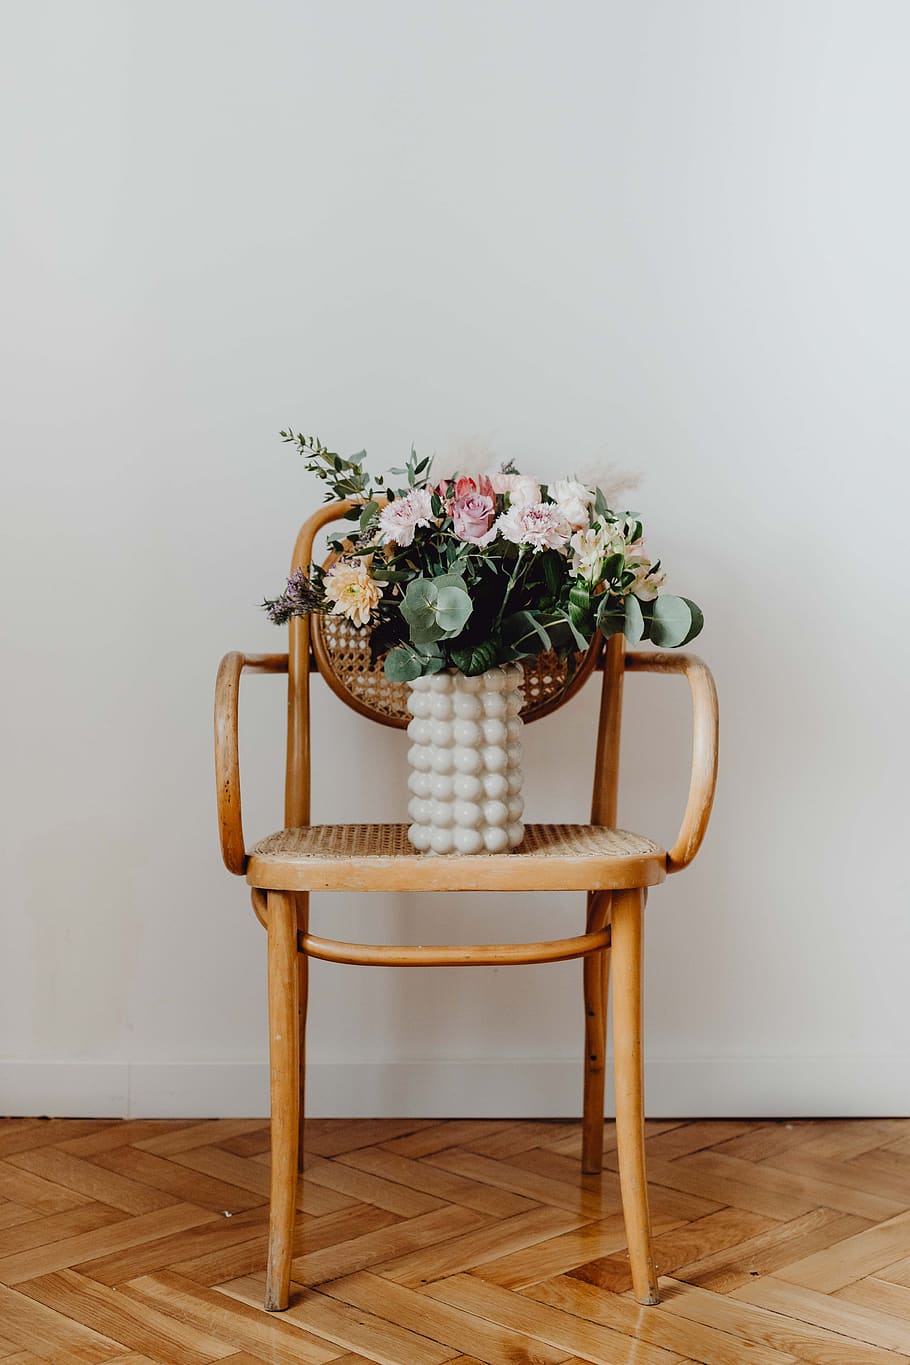 buquê, flores, vaso, floral, cadeira, Linda, madeira, flor, interior, planta com flor